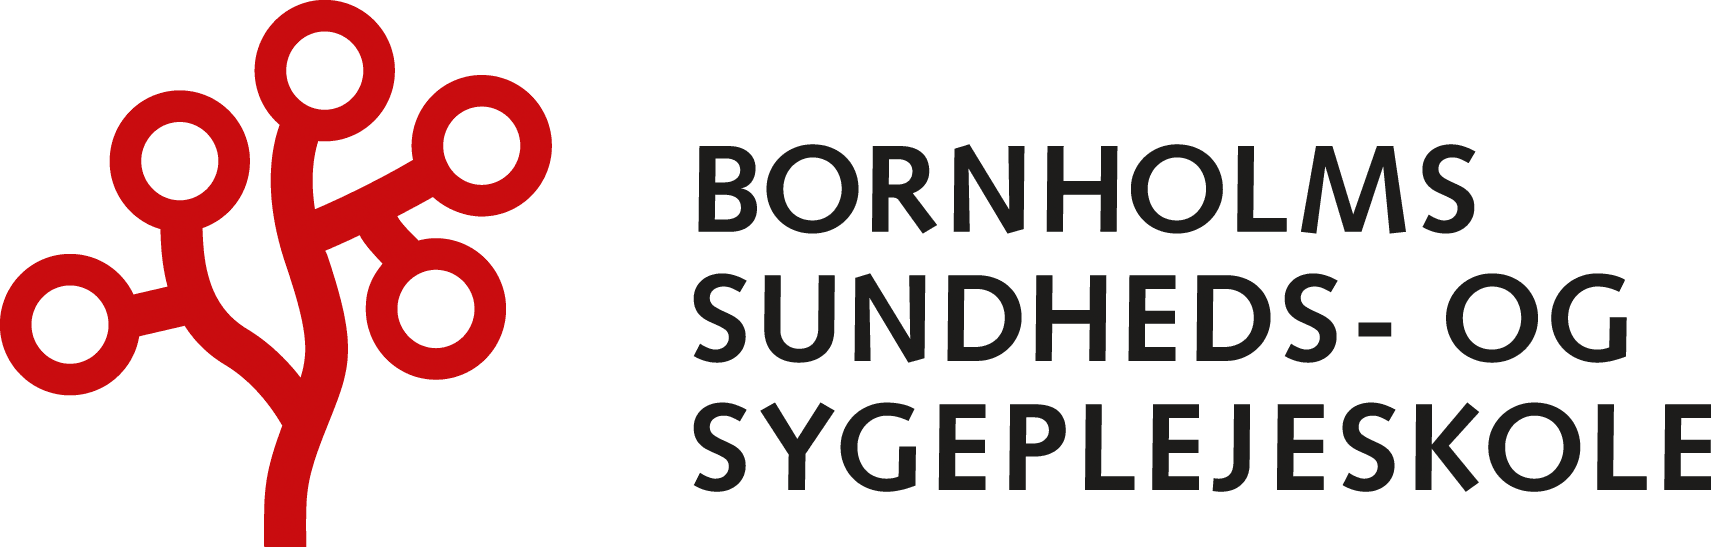 Bornholms Sundheds- og Sygepleskole